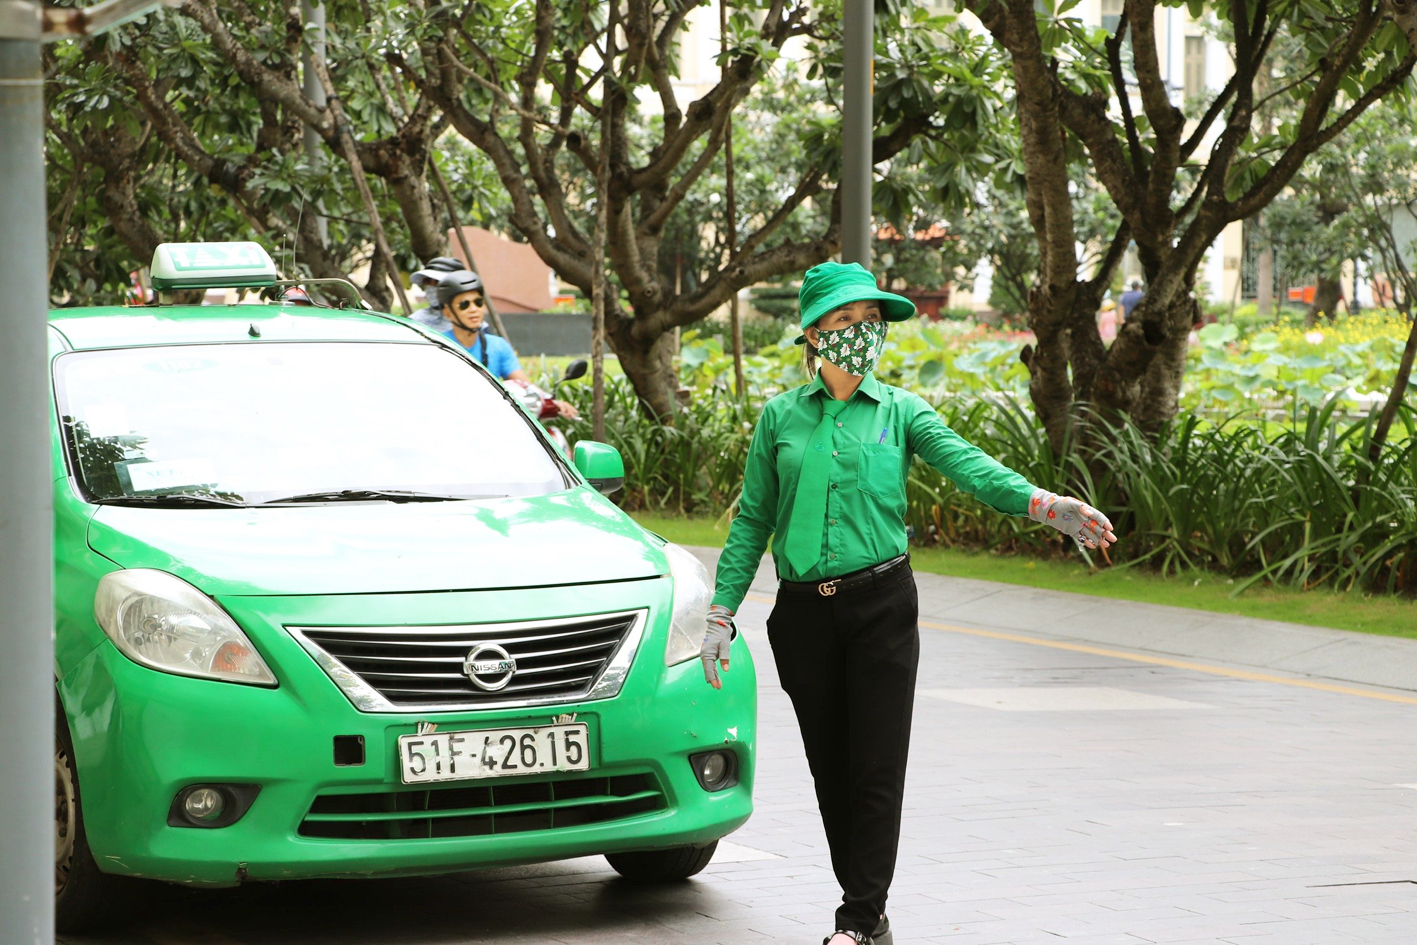 Taxi truyền thống đang lấy lại thế cân bằng trong cạnh tranh với taxi “công nghệ” - ẢNH: Q.THÁI